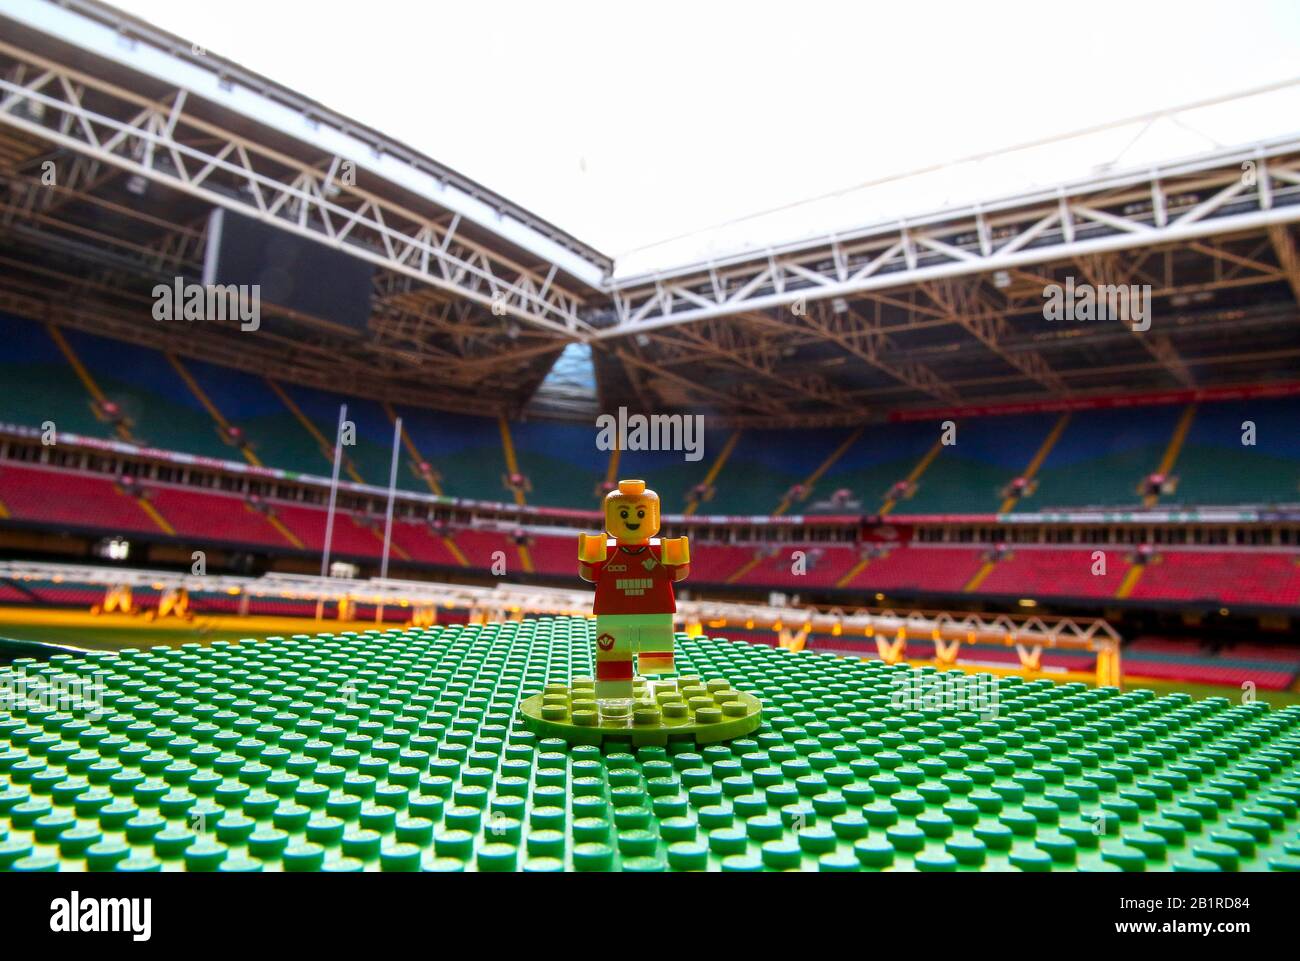 Une figurine miniature du joueur de rugby Gareth Thomas, qui est l'une des  légendes en édition limitée de Mingallois créées avec des pièces LEGO, est  dévoilée au stade de la Principauté de